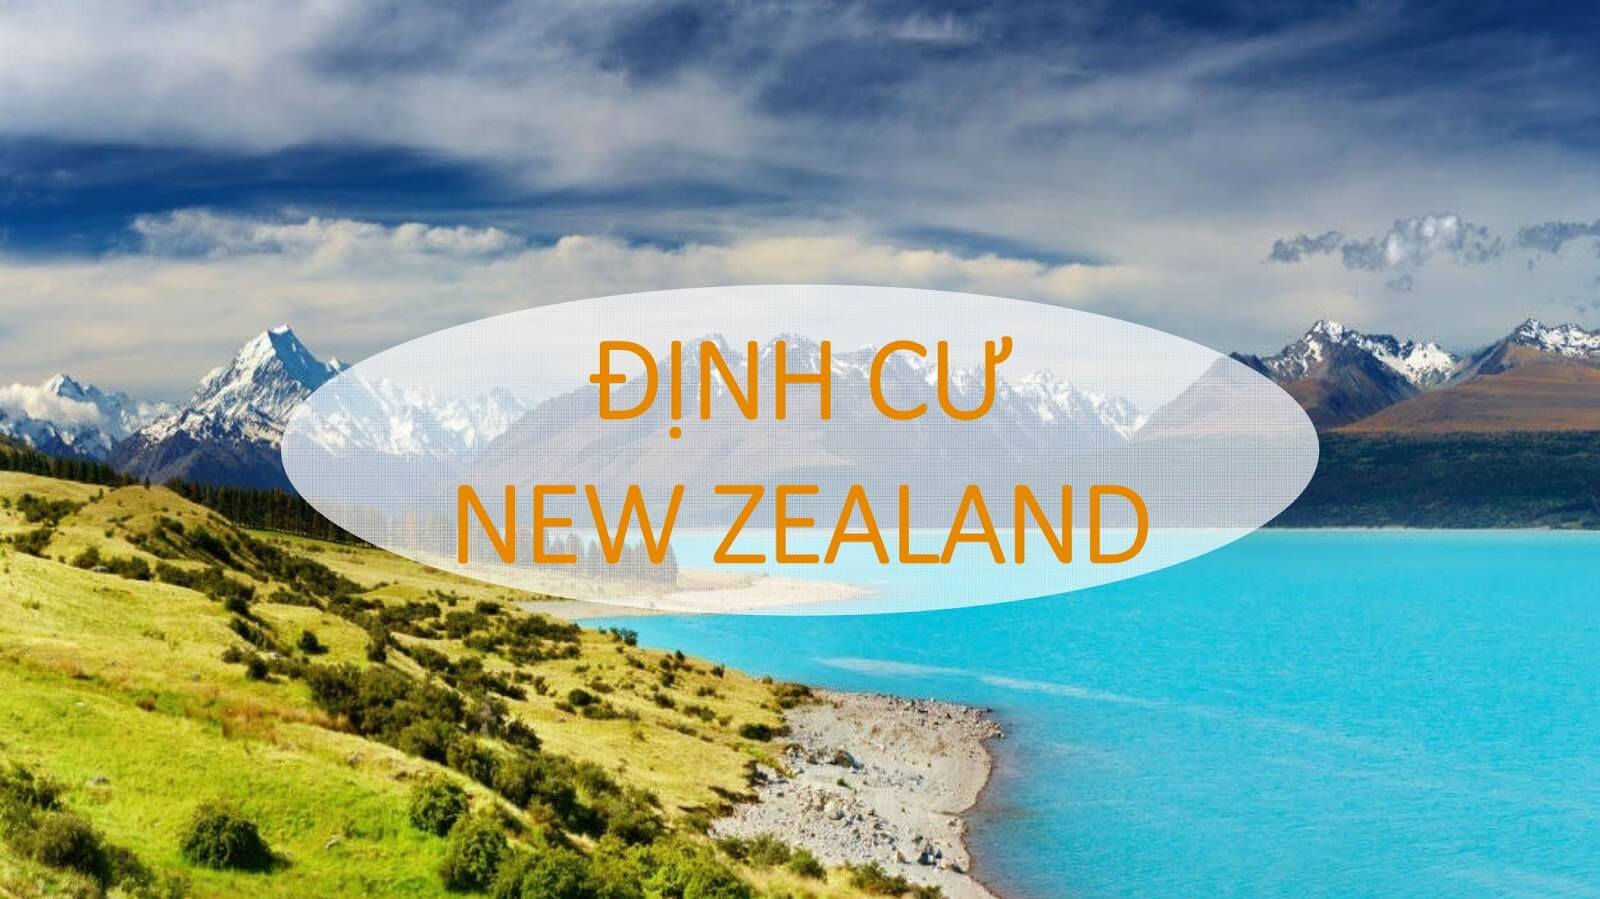 Định cư New Zealand và những thông tin hữu ích bạn cần quan tâm